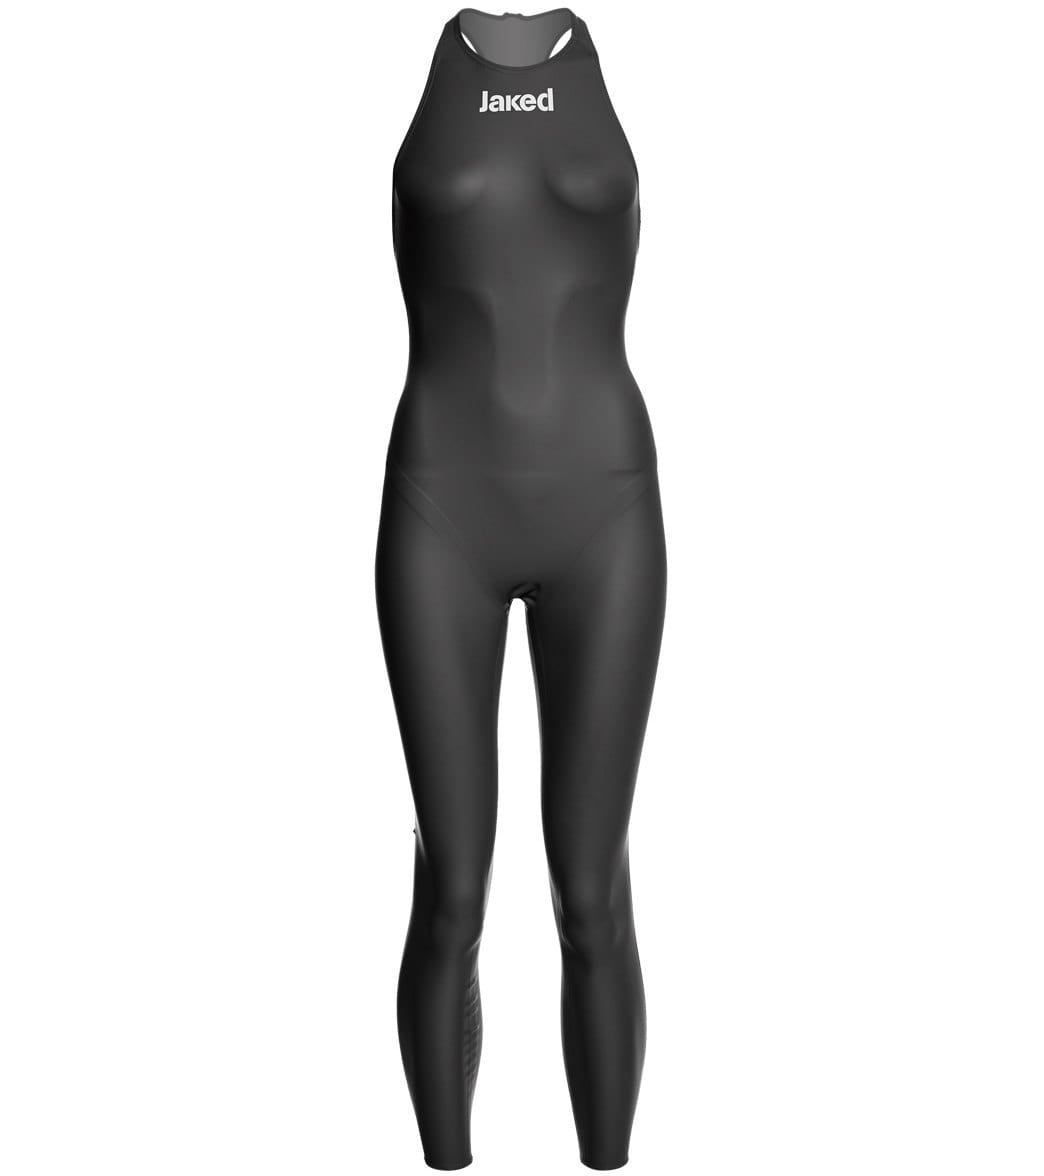 Jaked Women's Reloaded Full Body Tech Suit Swimsuit - Black 18 Elastane/Polyamide/Polyurethane - Swimoutlet.com